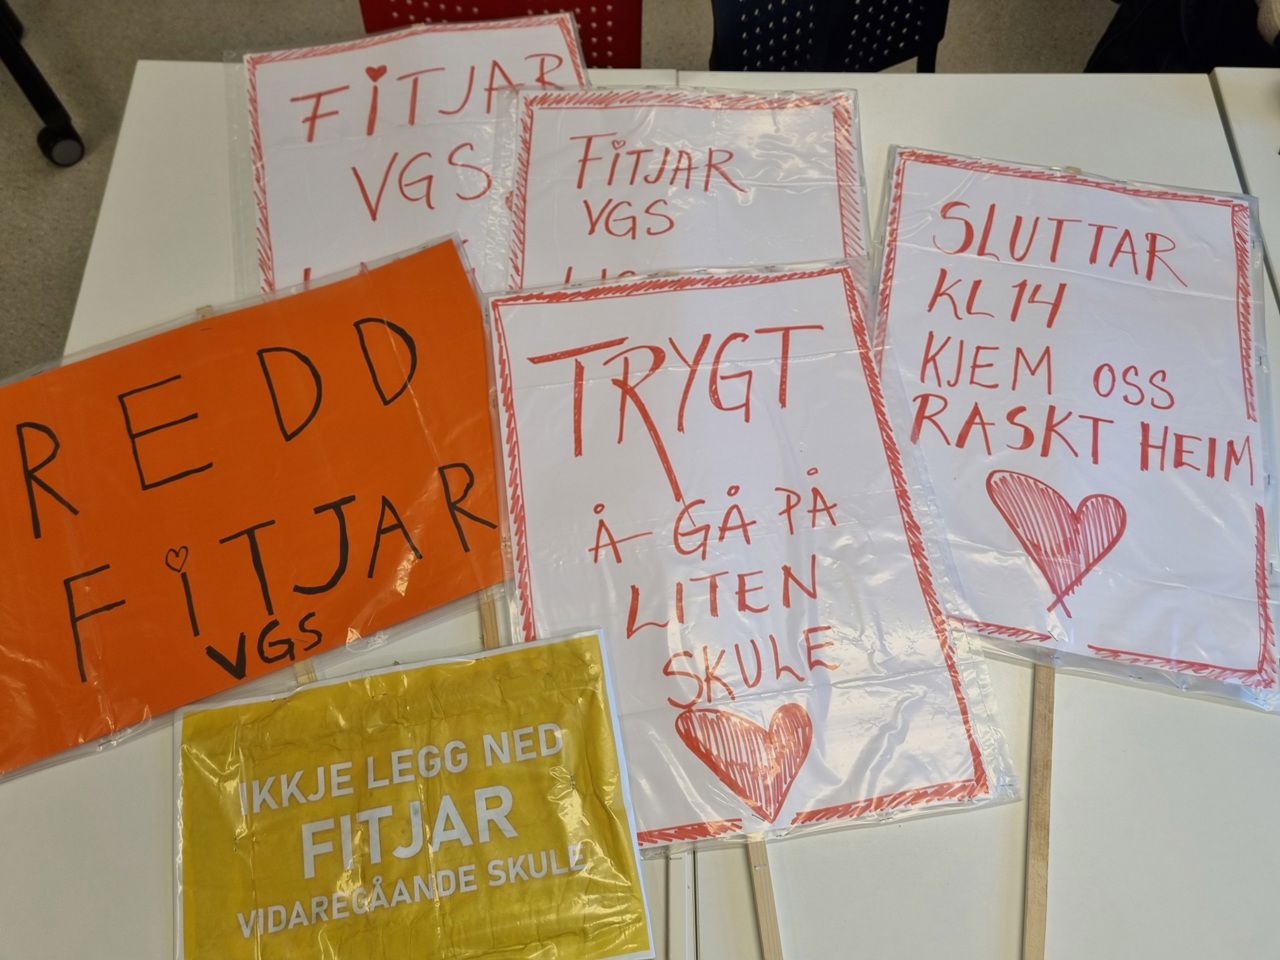 Mange plakatar som ligg på eit bord, med tekst som "redd fitjar vgs", "trygt å gå på liten skule" osb.